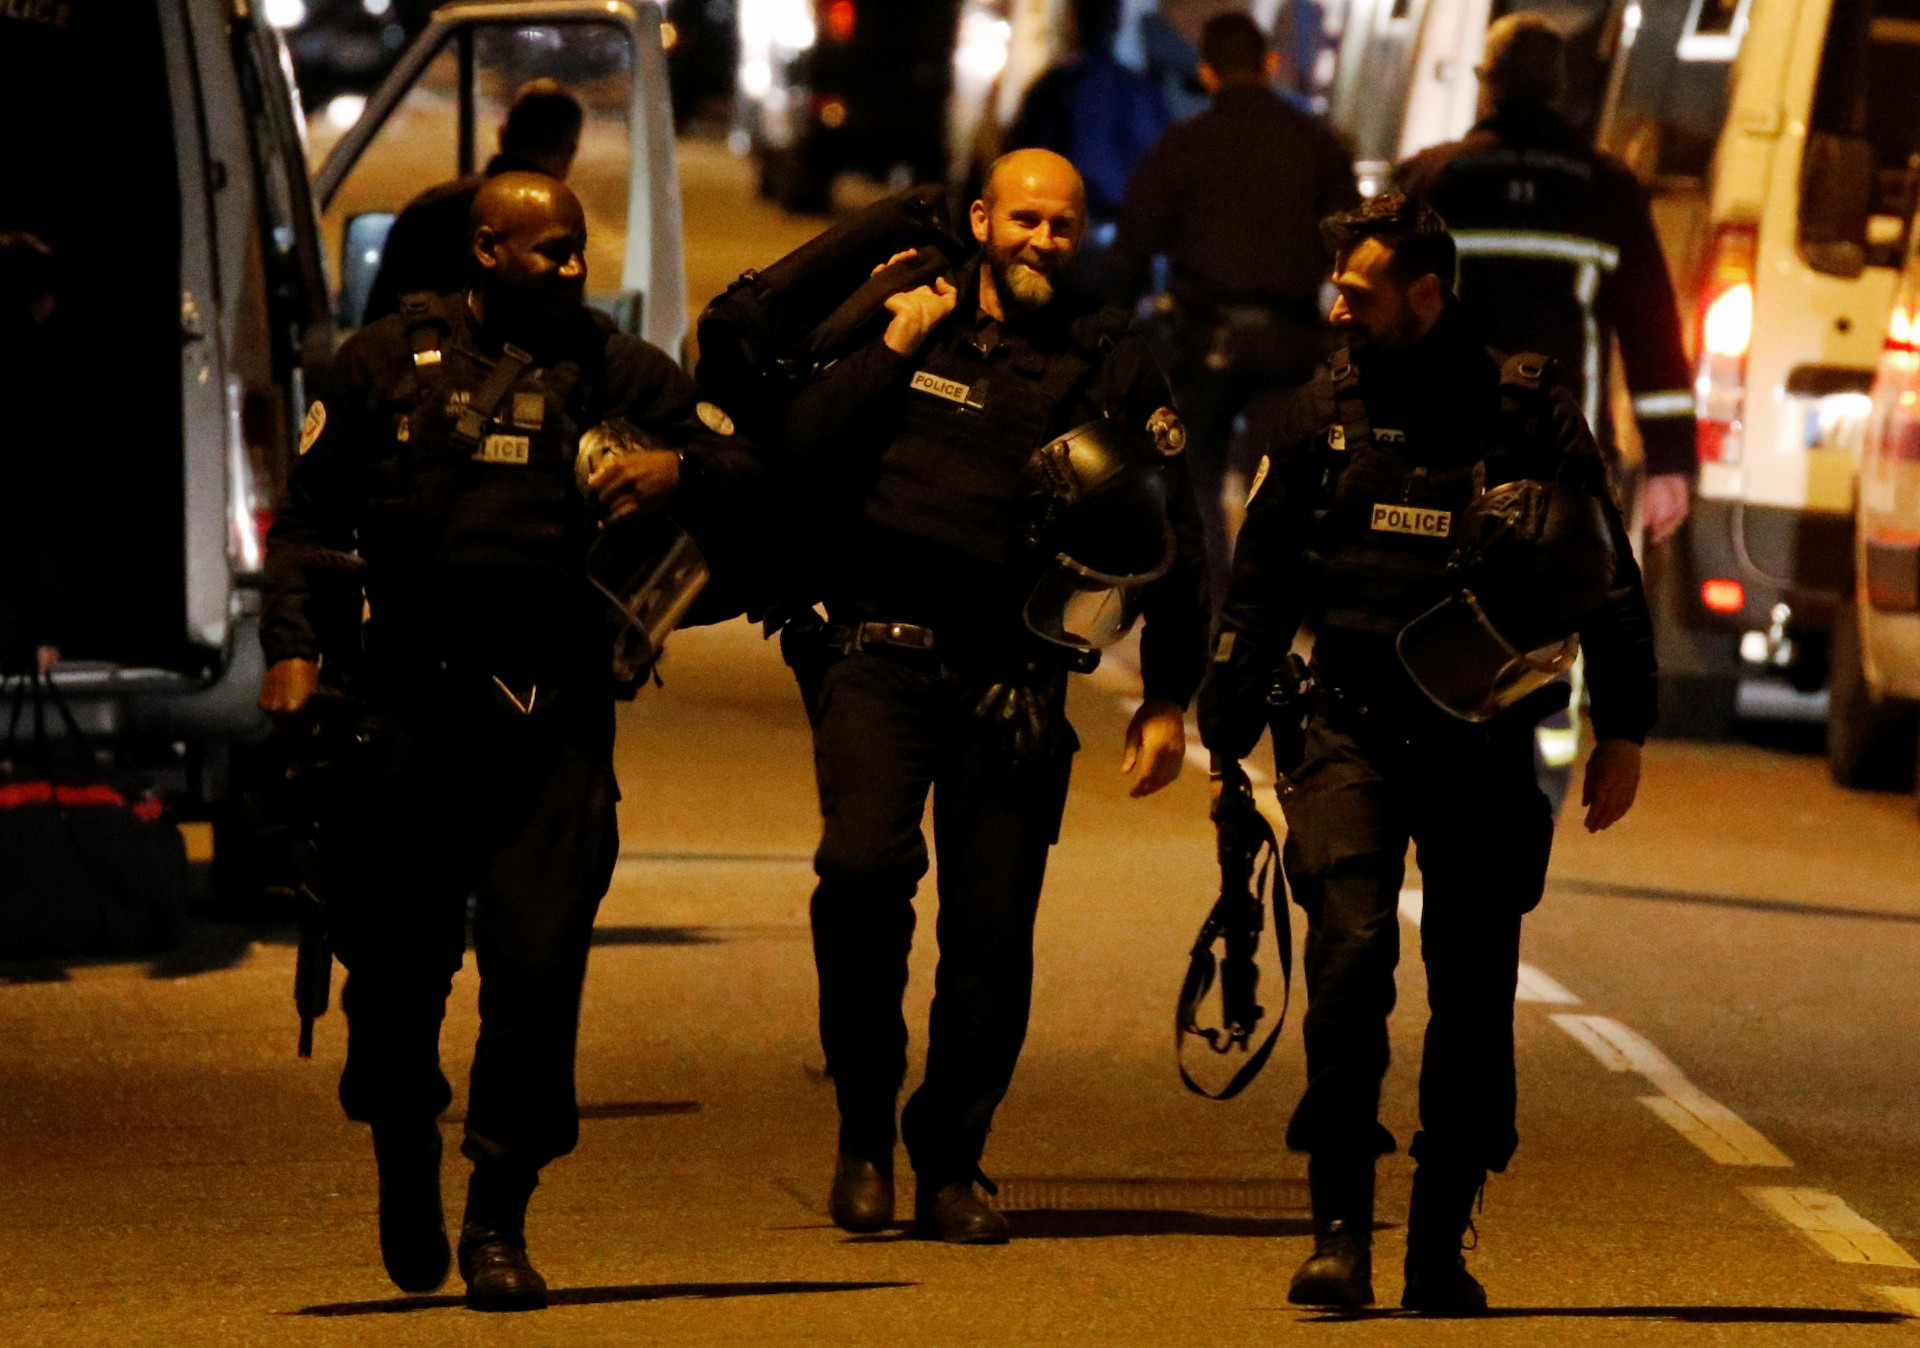 La police française a interpellé le jeune homme à l’origine de la prise d’otages